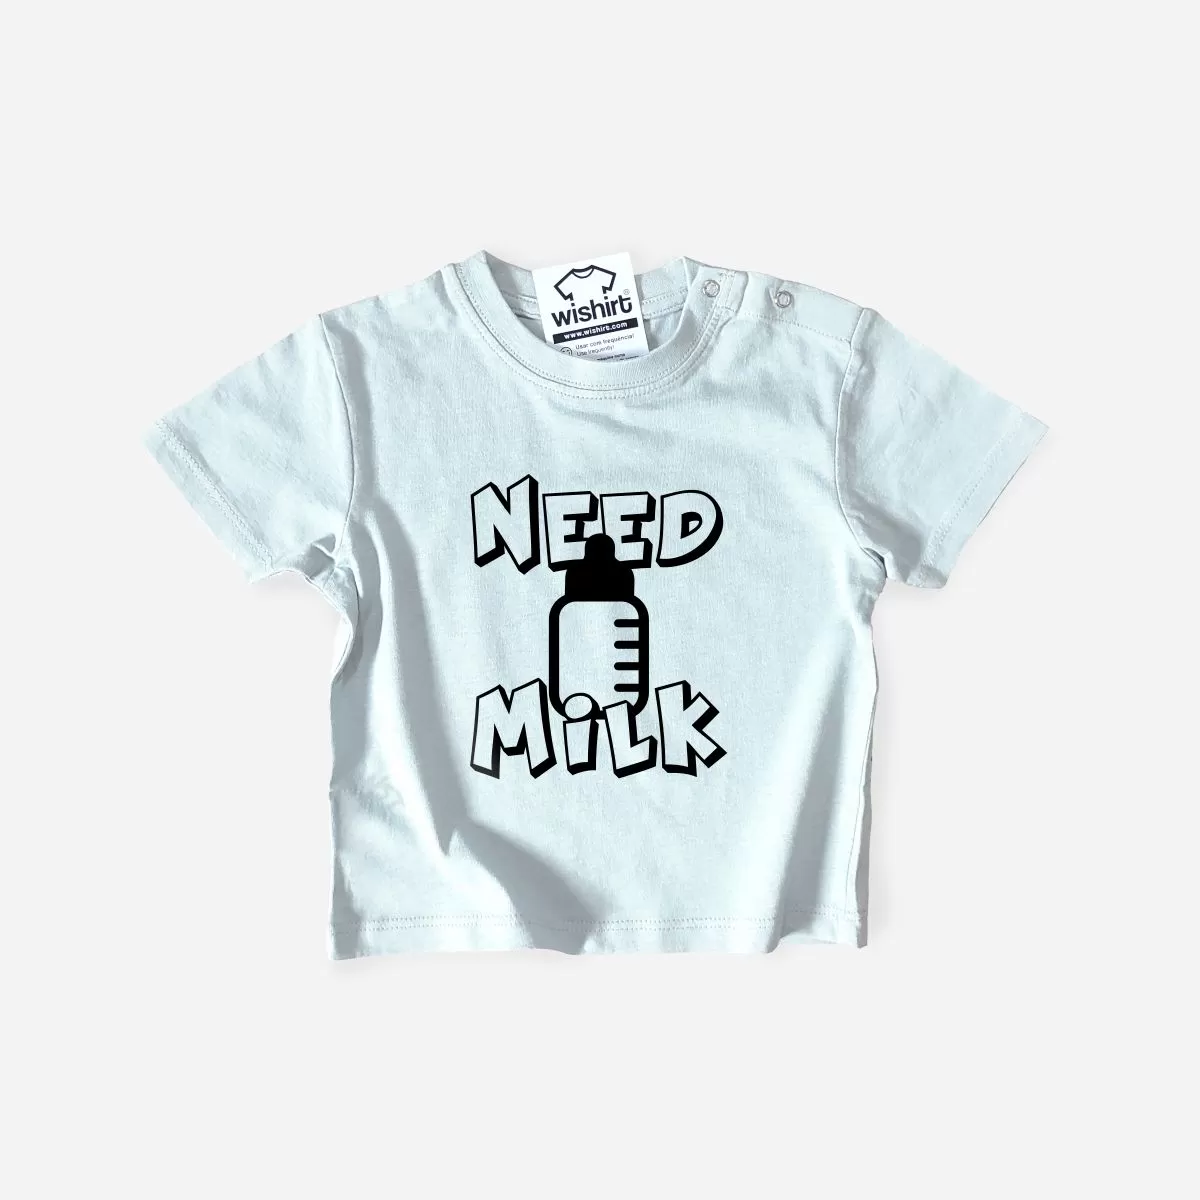 Need Milk Baby T-shirt - Wishirt T-shirts